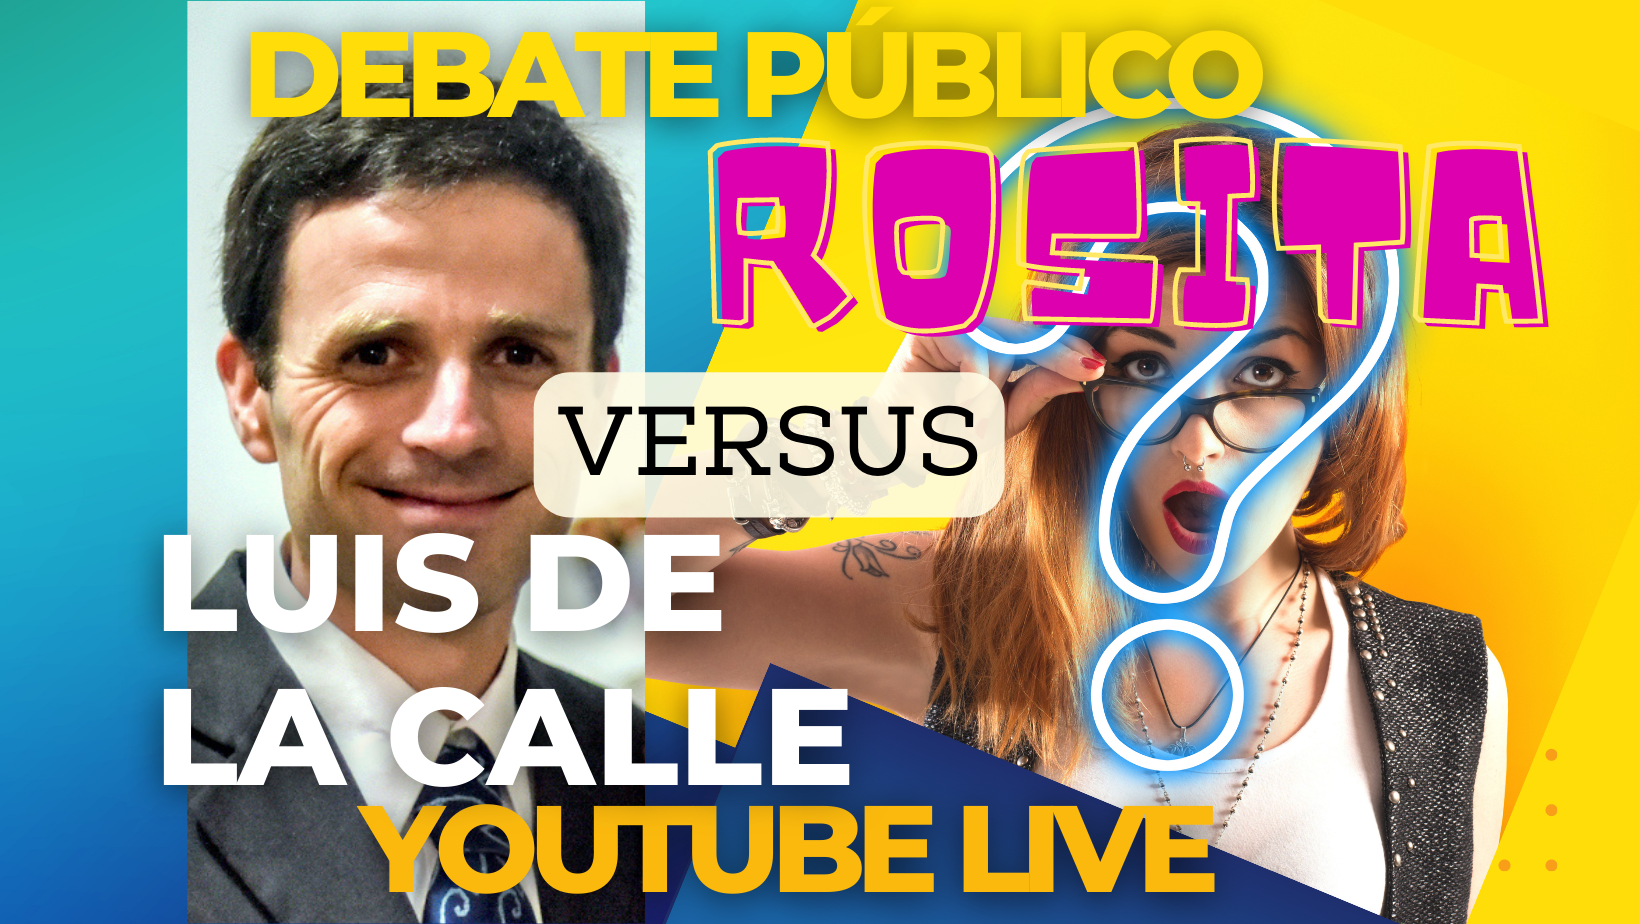 Invitación a “Rosita” a un debate público